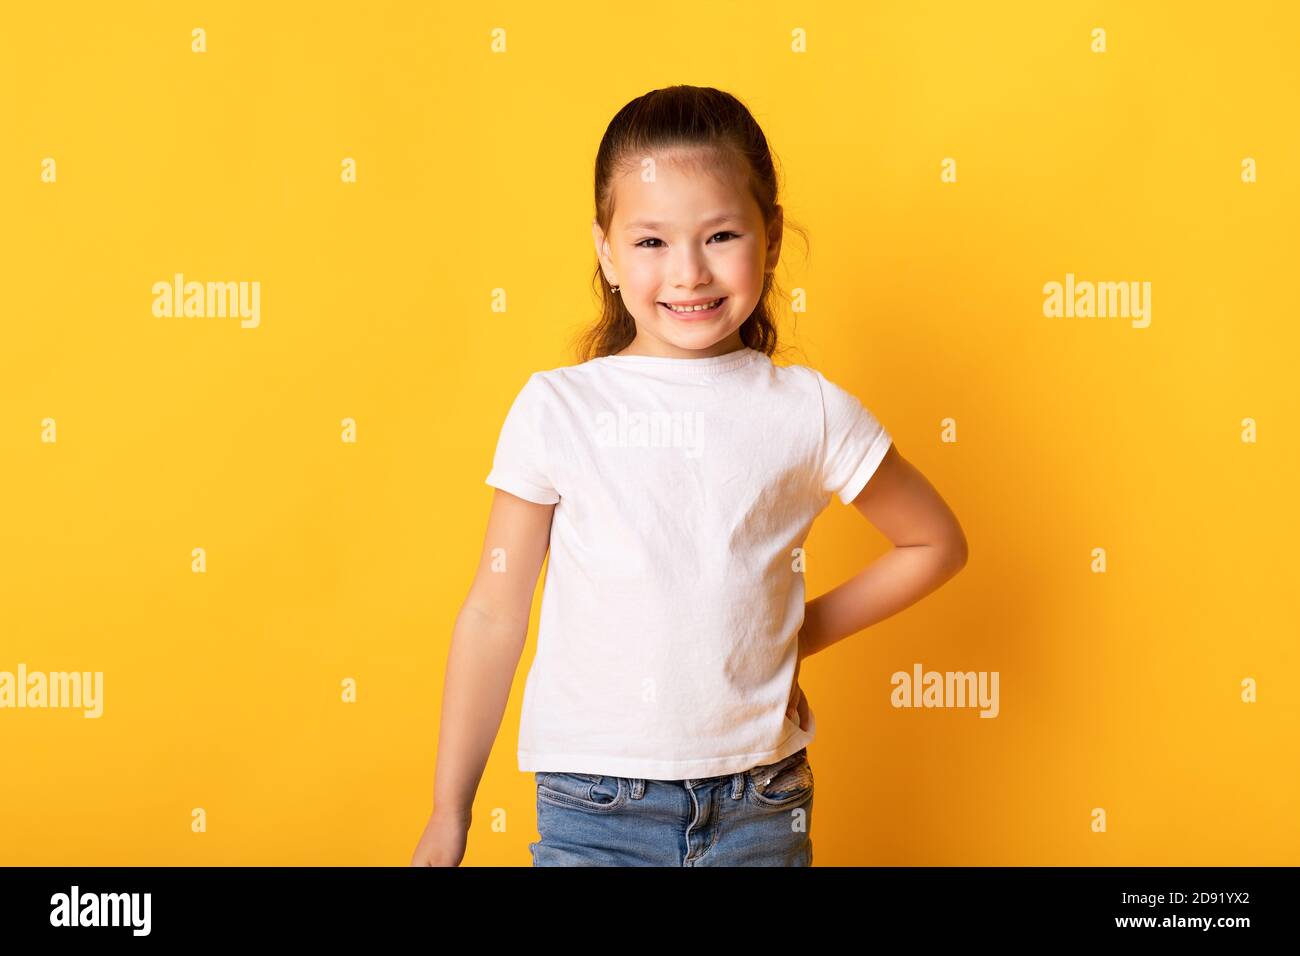 Smiling asian girl posing and looking at camera Stock Photo